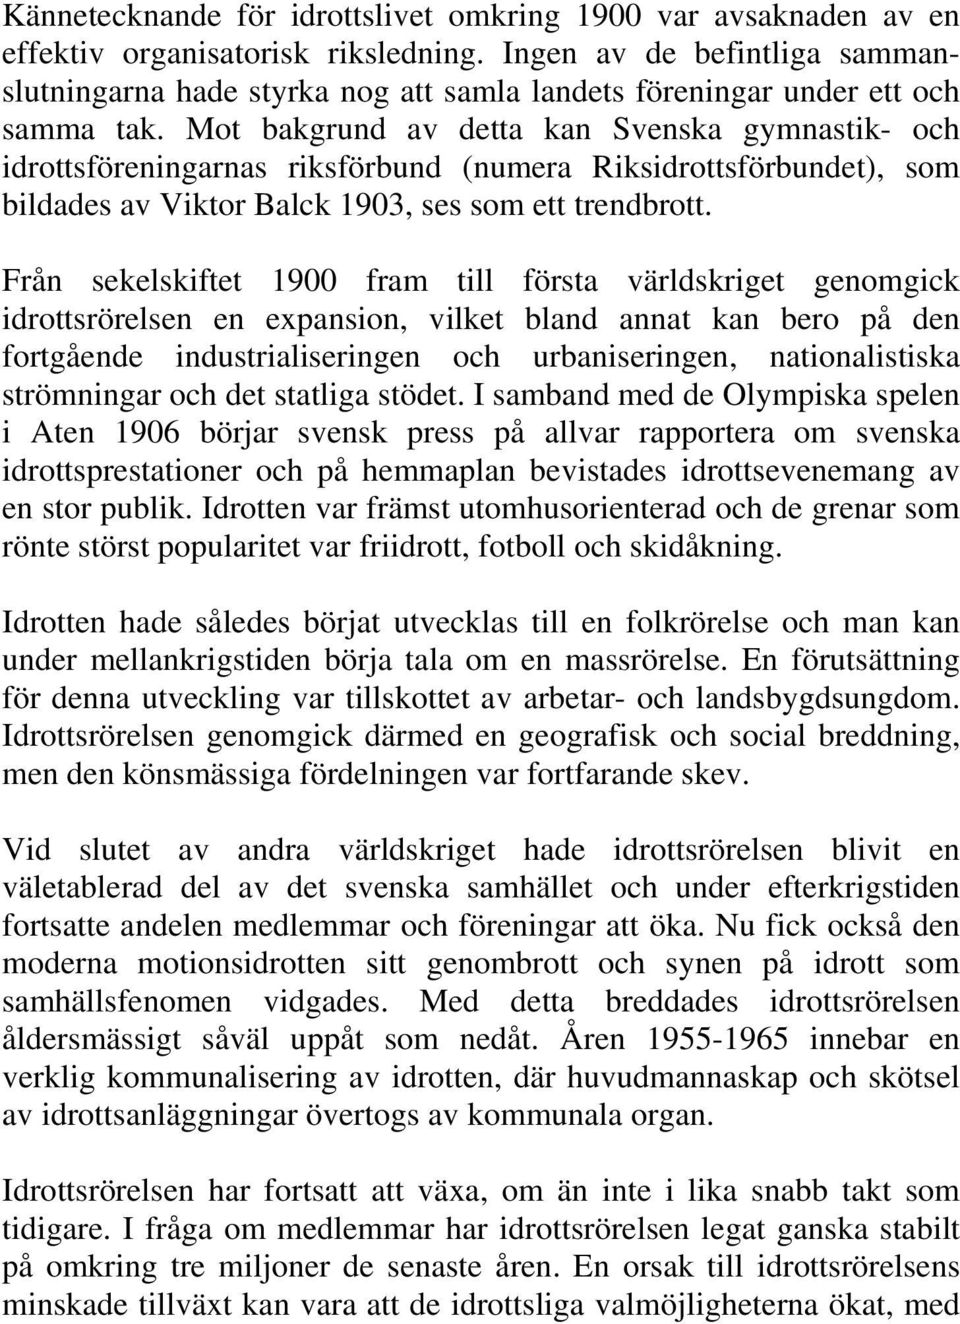 Mot bakgrund av detta kan Svenska gymnastik- och idrottsföreningarnas riksförbund (numera Riksidrottsförbundet), som bildades av Viktor Balck 1903, ses som ett trendbrott.